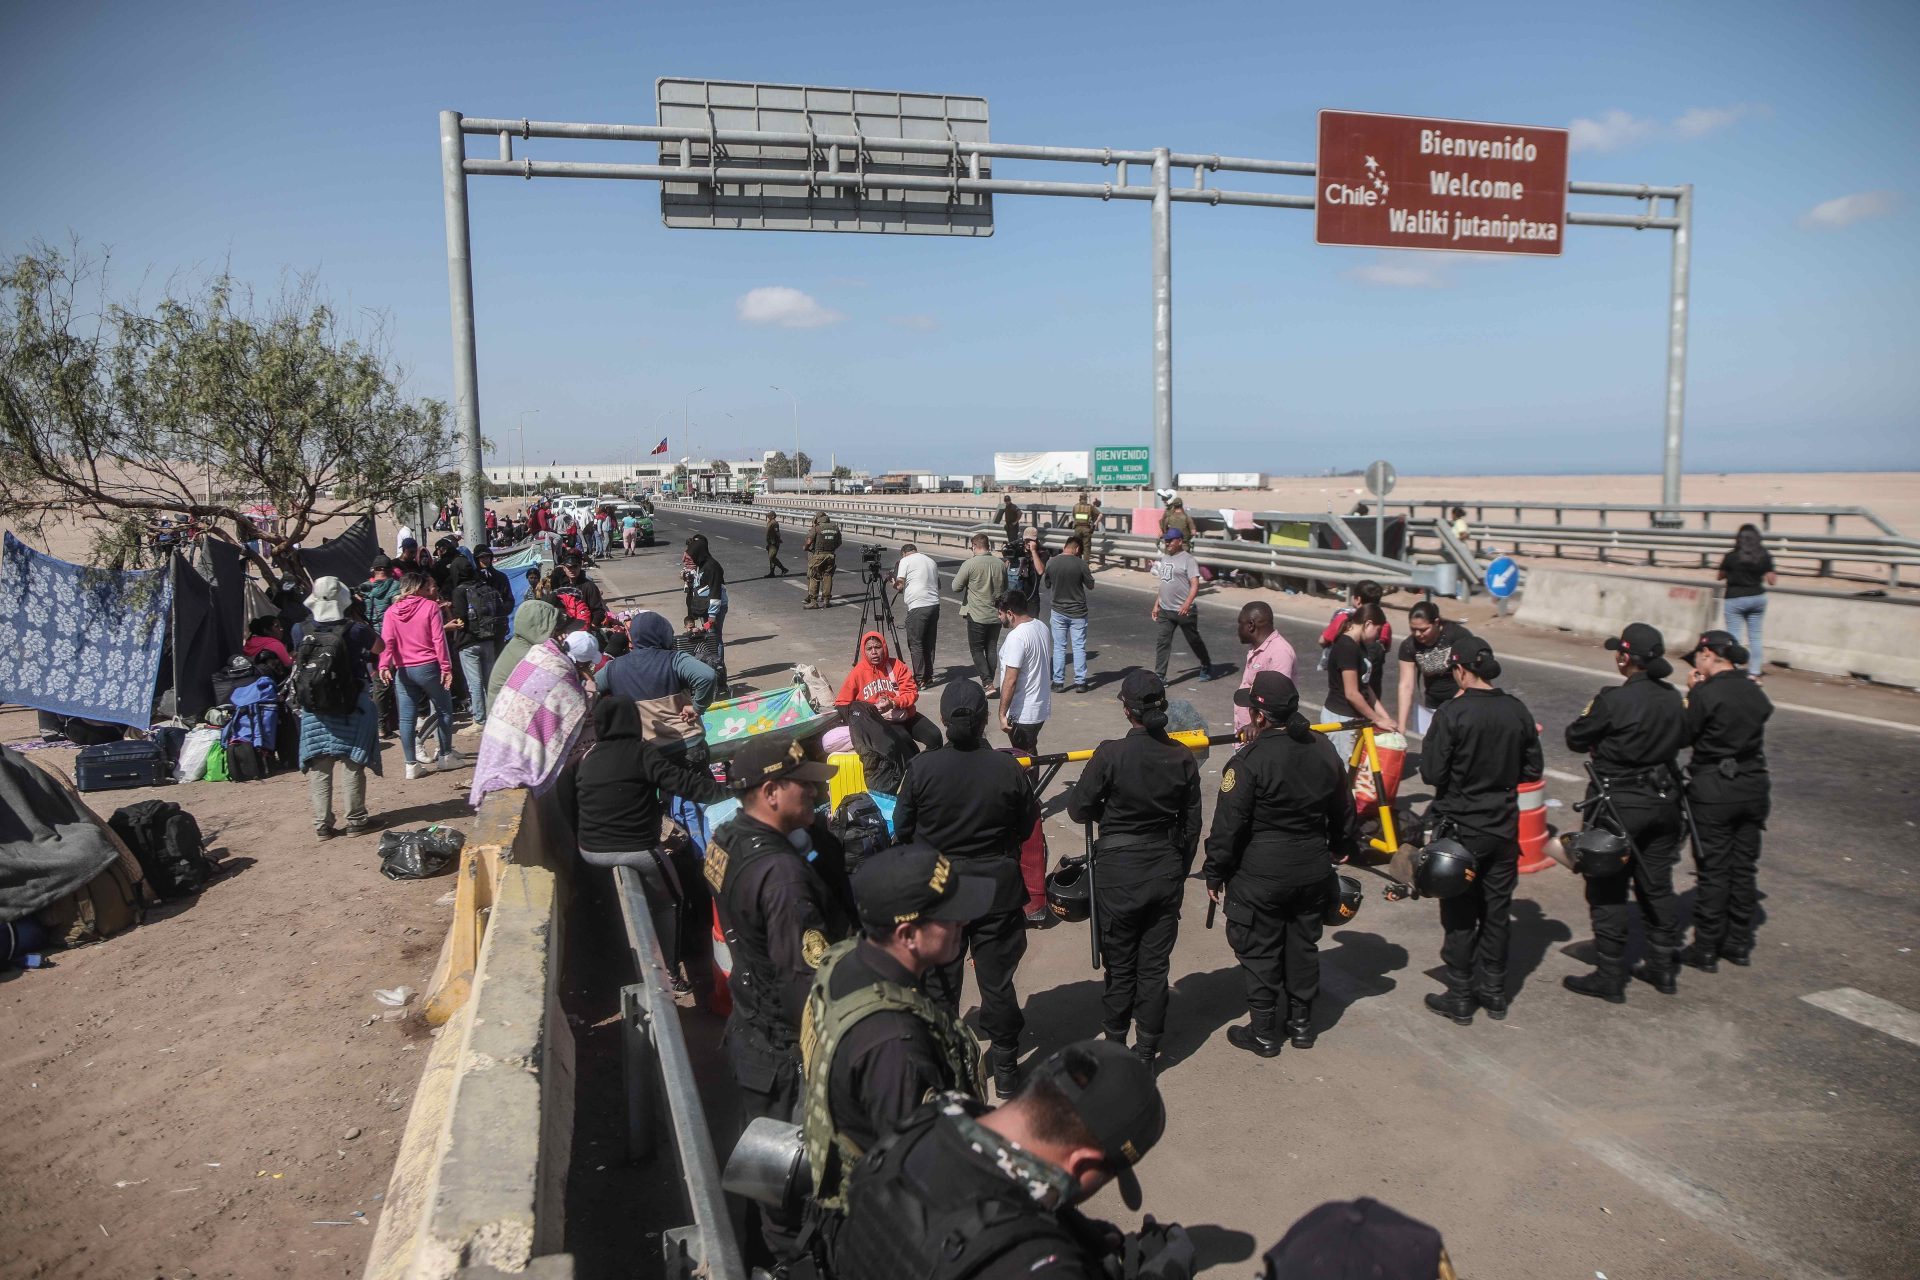 EDITORIAL] Preocupación por el escenario sin precedentes en la frontera entre Perú y Chile - IDEHPUCP PUCP